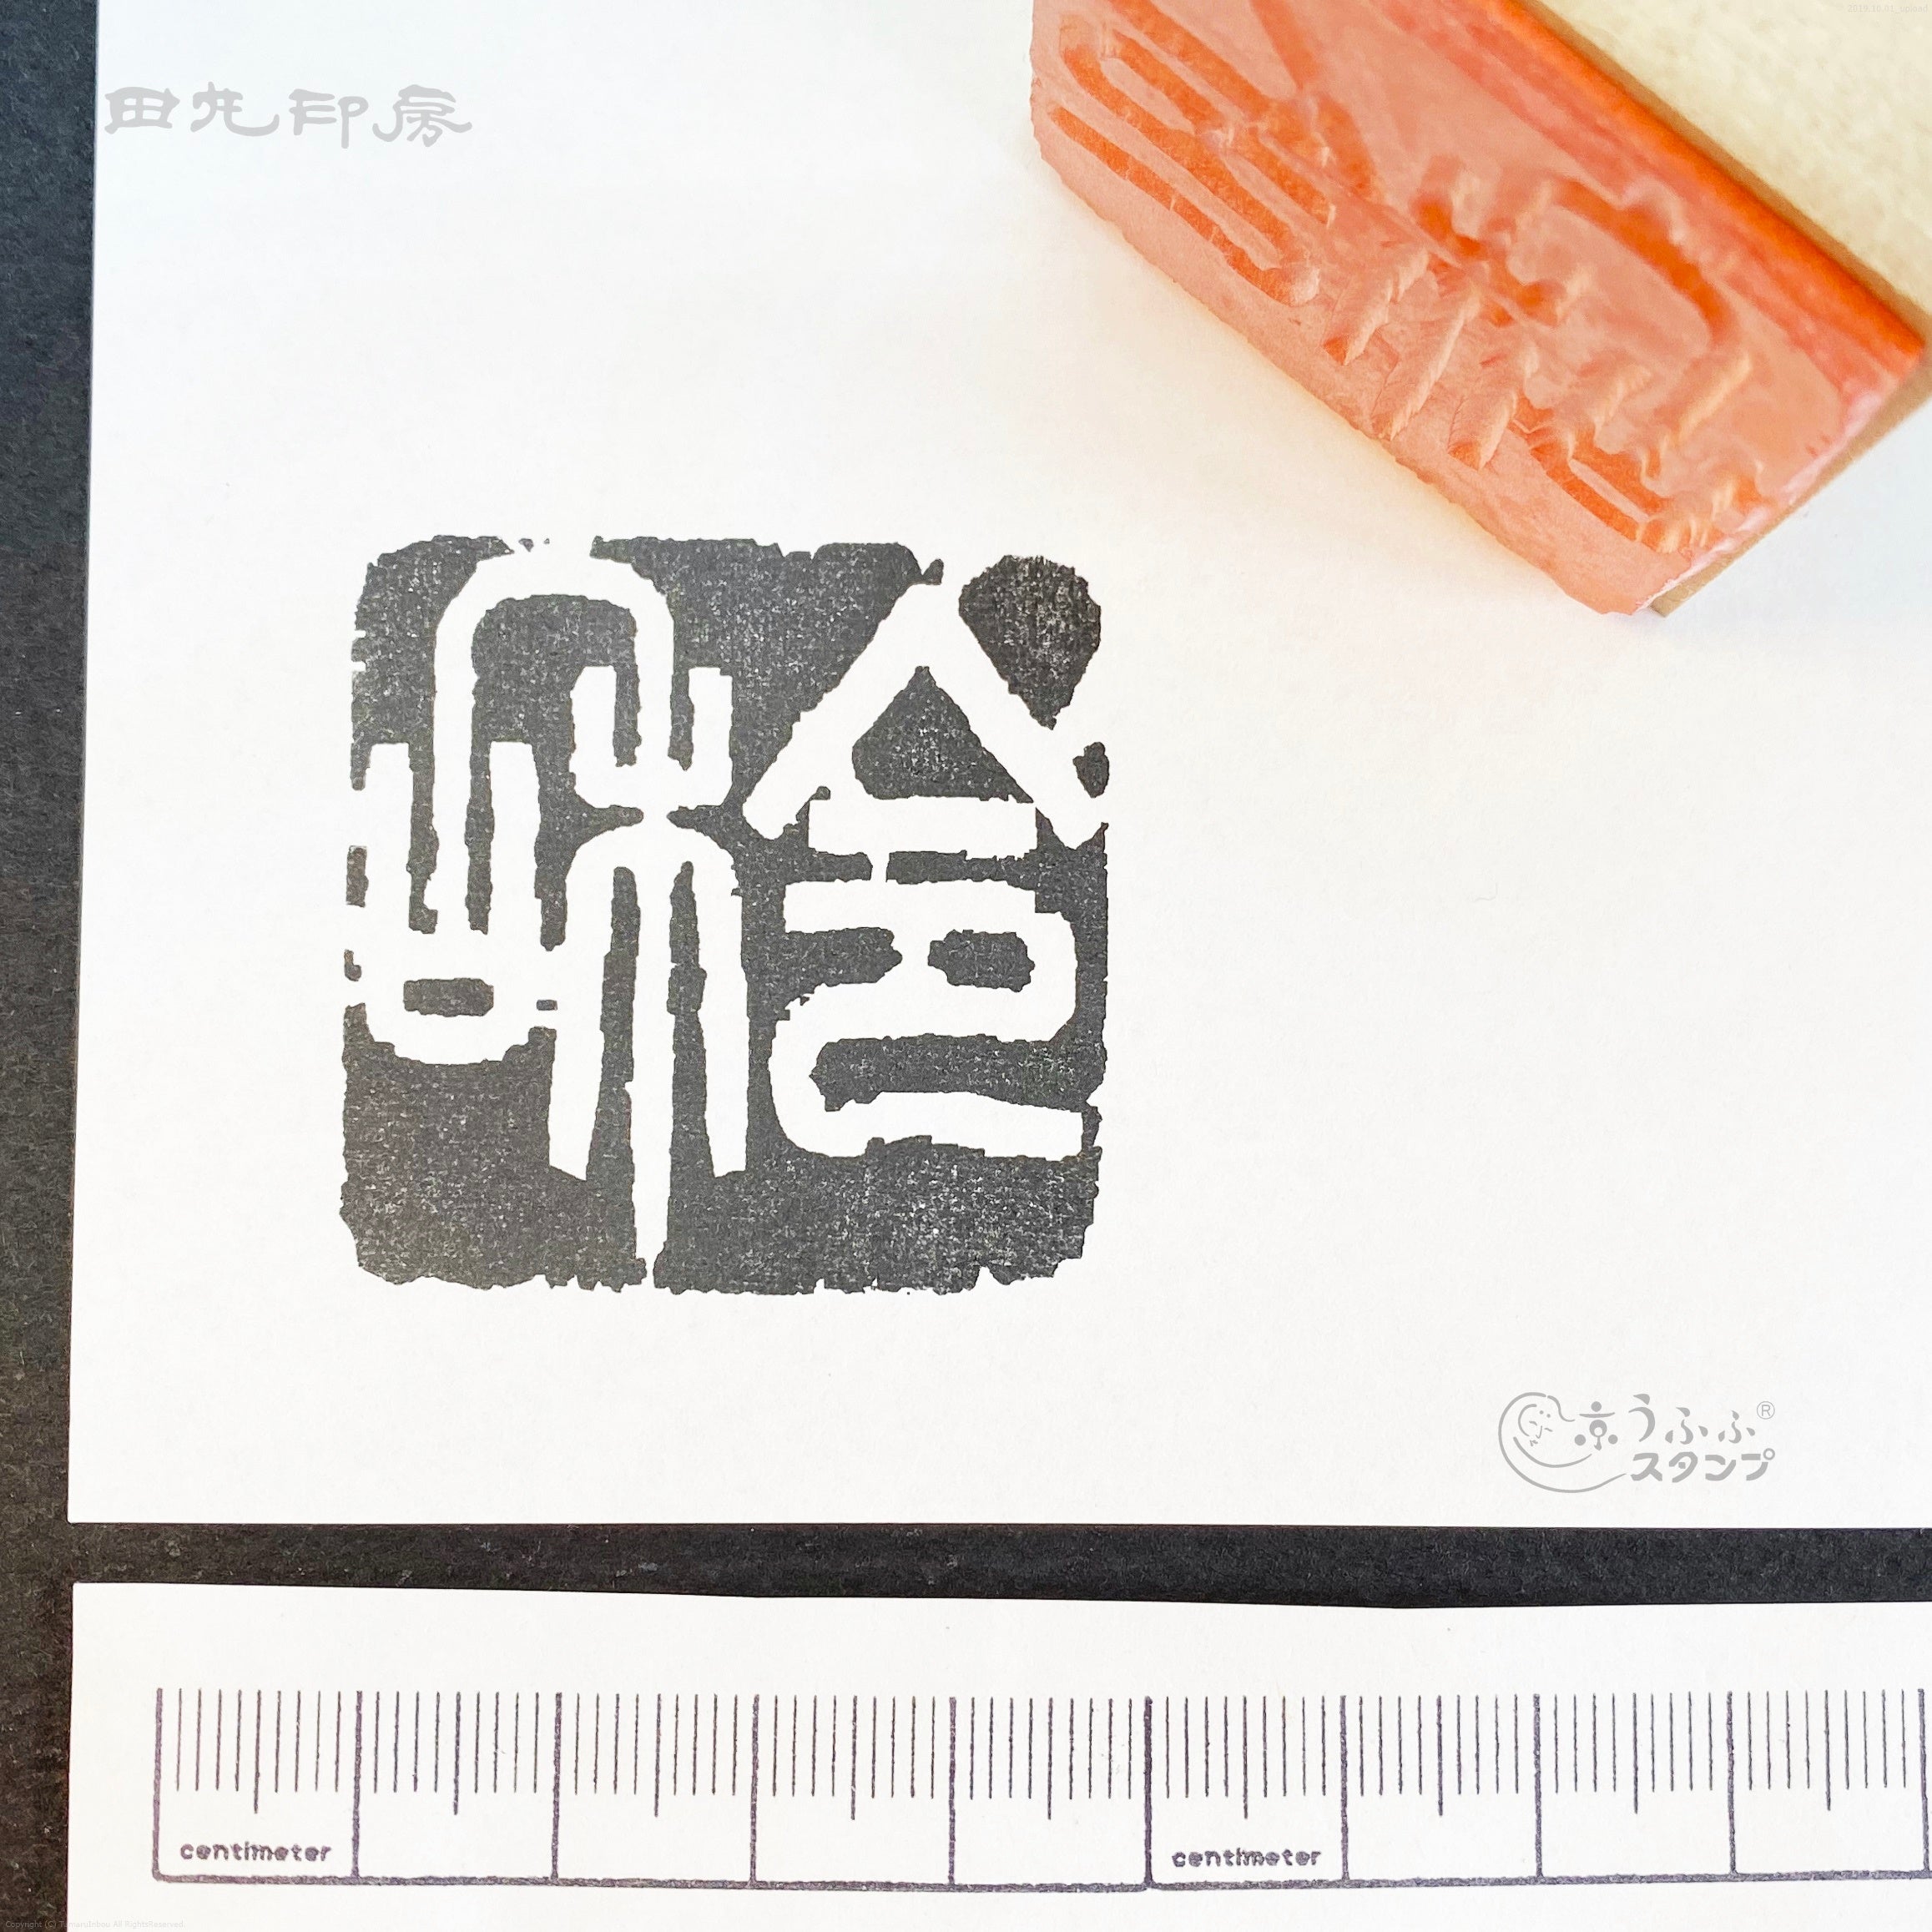 Reiwa seal writing white paper